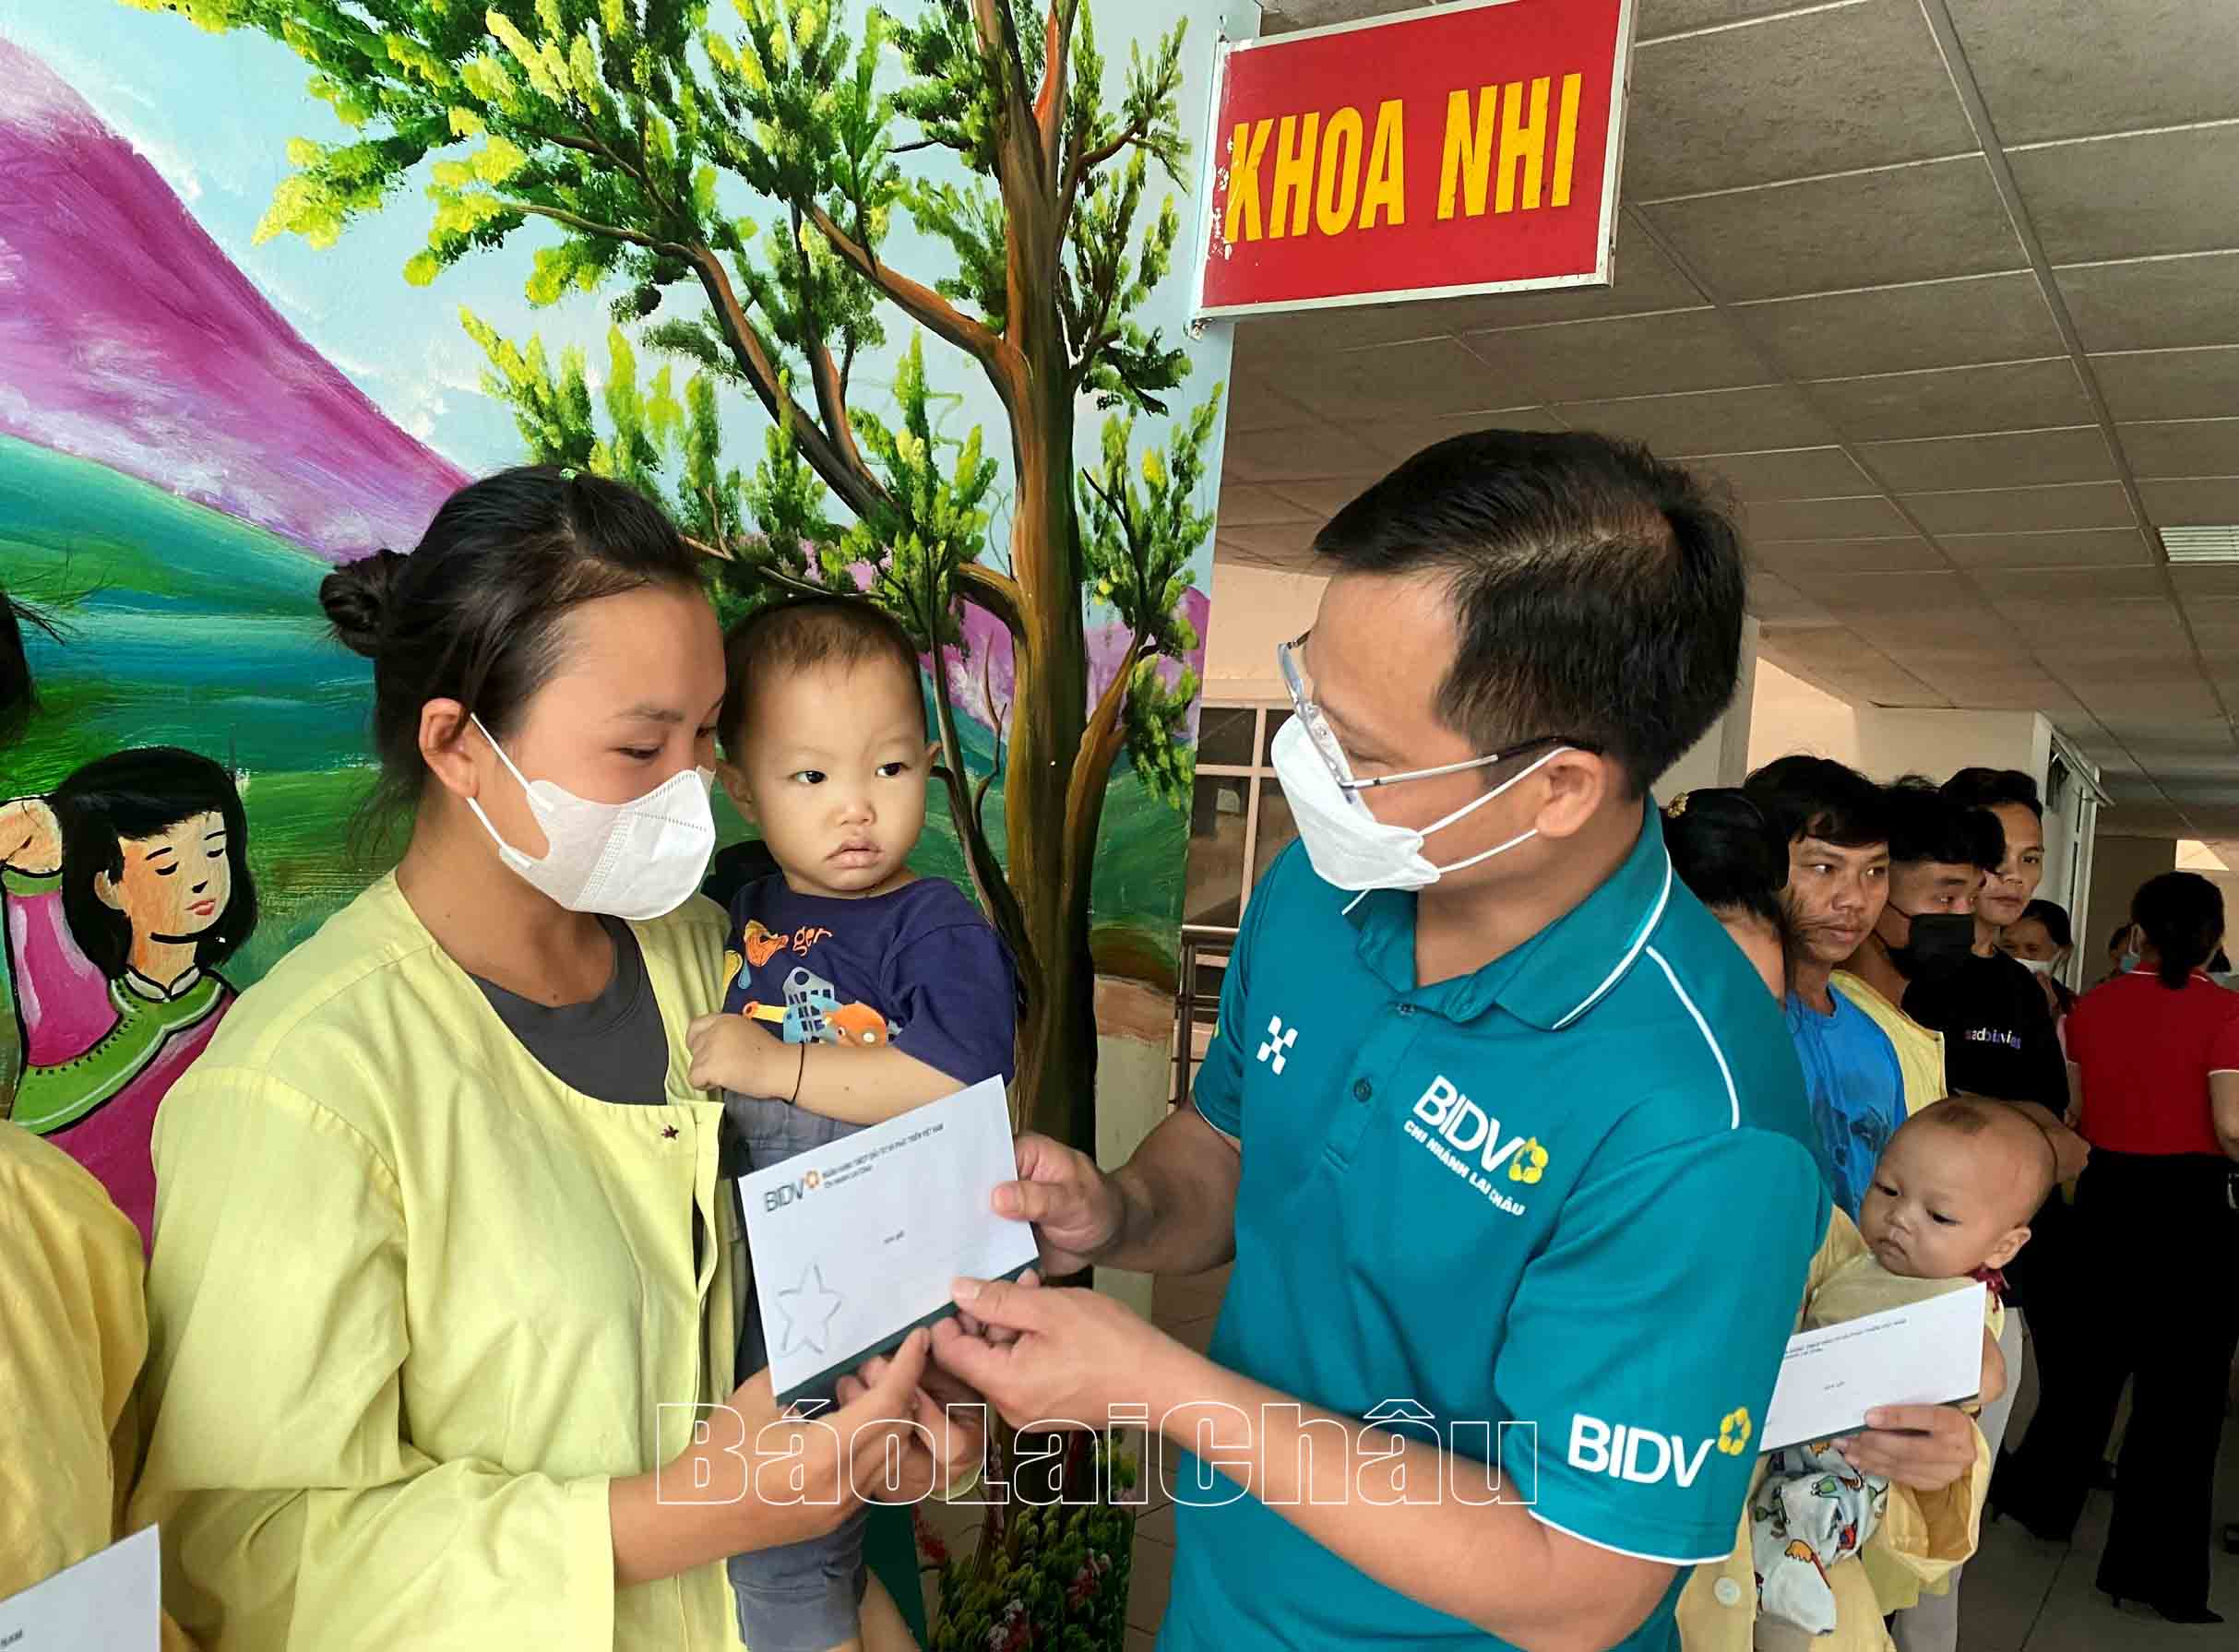 BIDV Lai Chau 지도자들은 지방종합병원에서 치료를 받고 있는 어려운 환경의 어린이들에게 선물을 주고 있습니다.